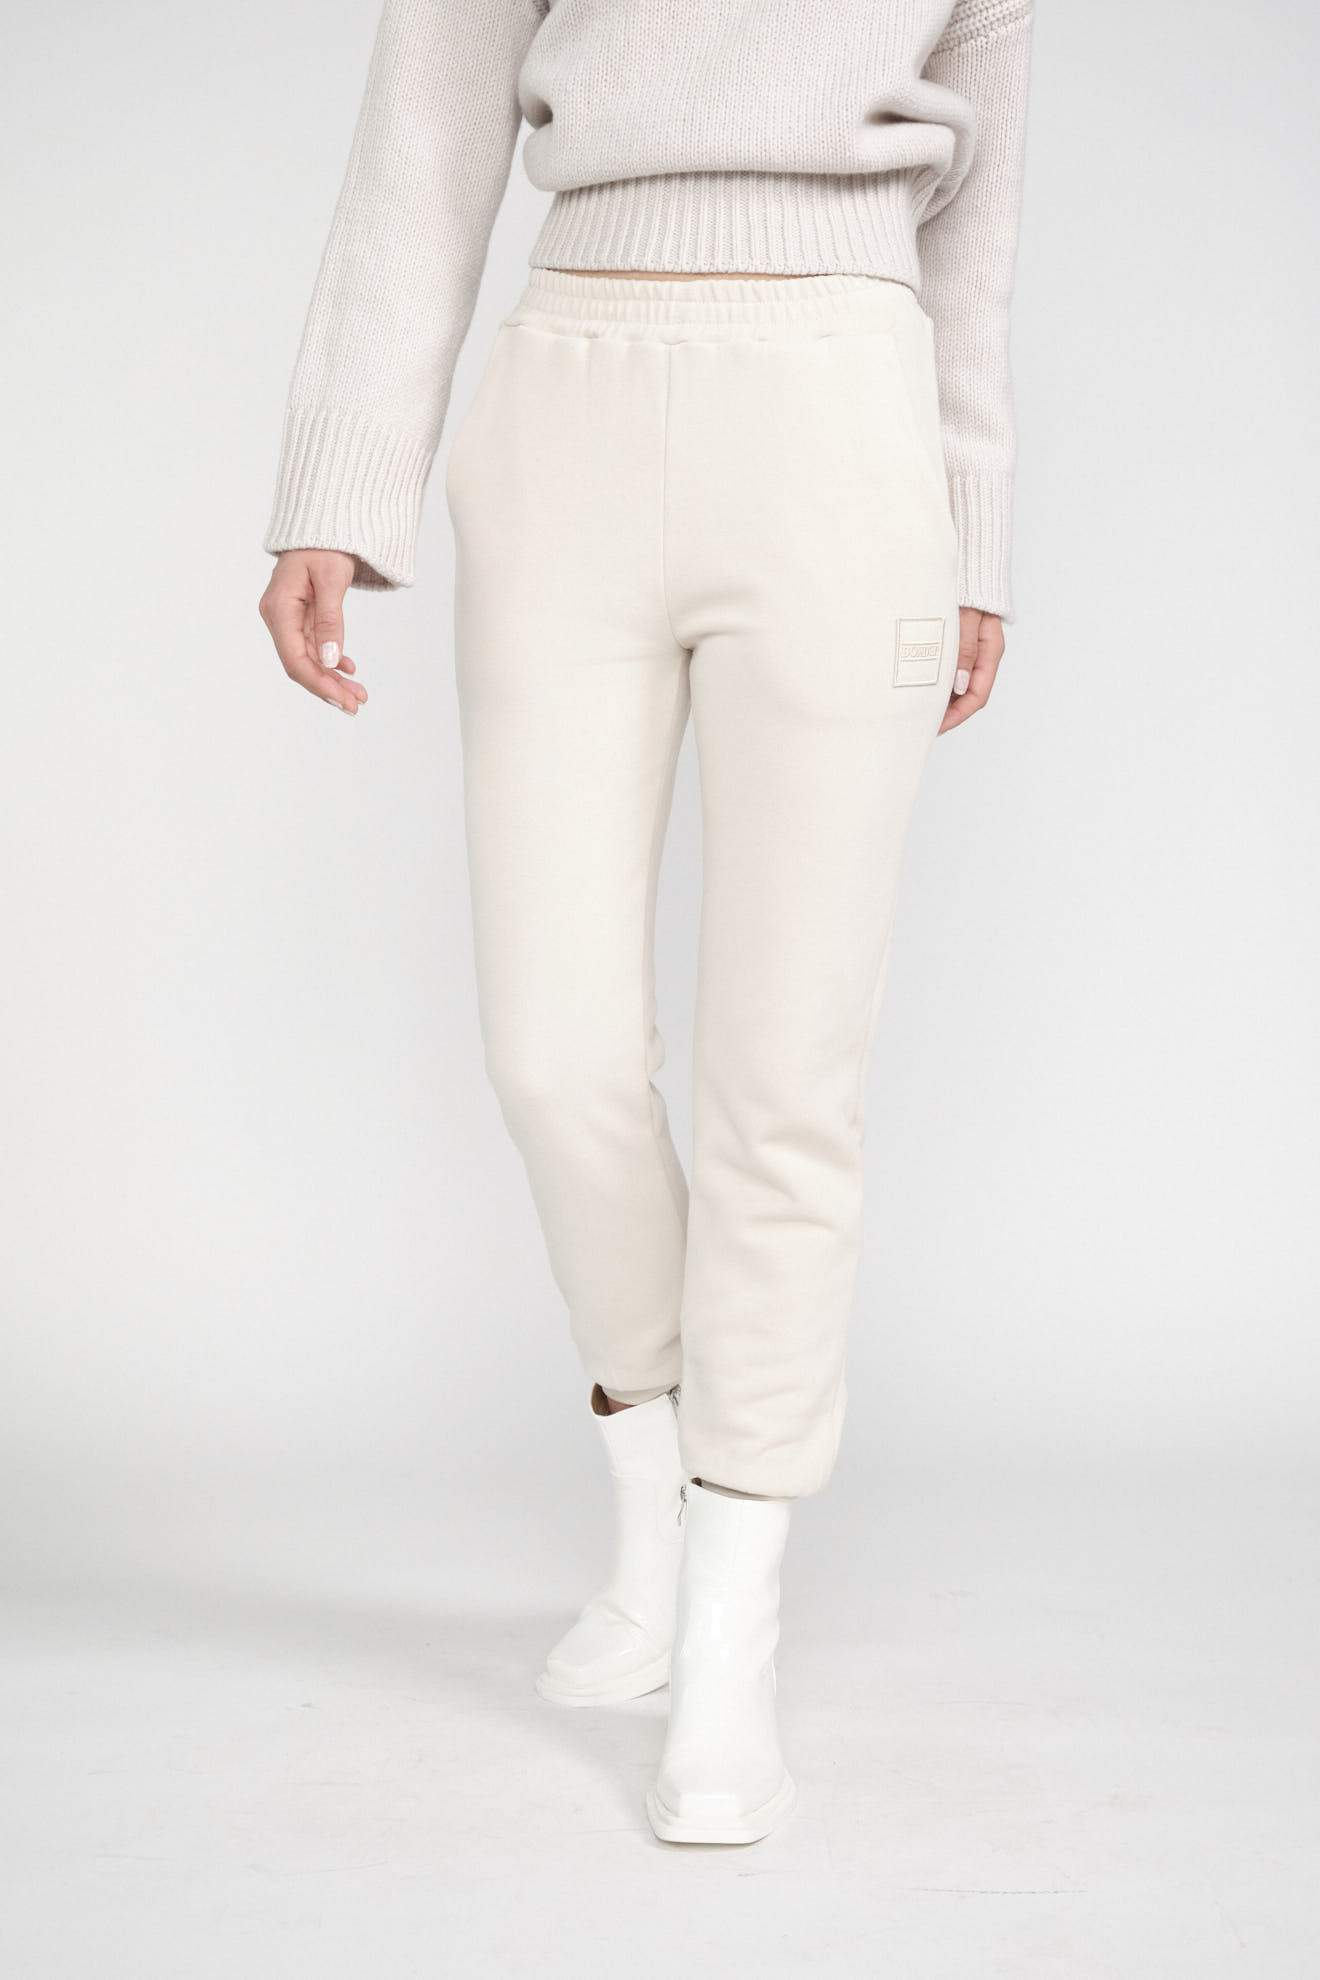 dondup pants white plain cotton